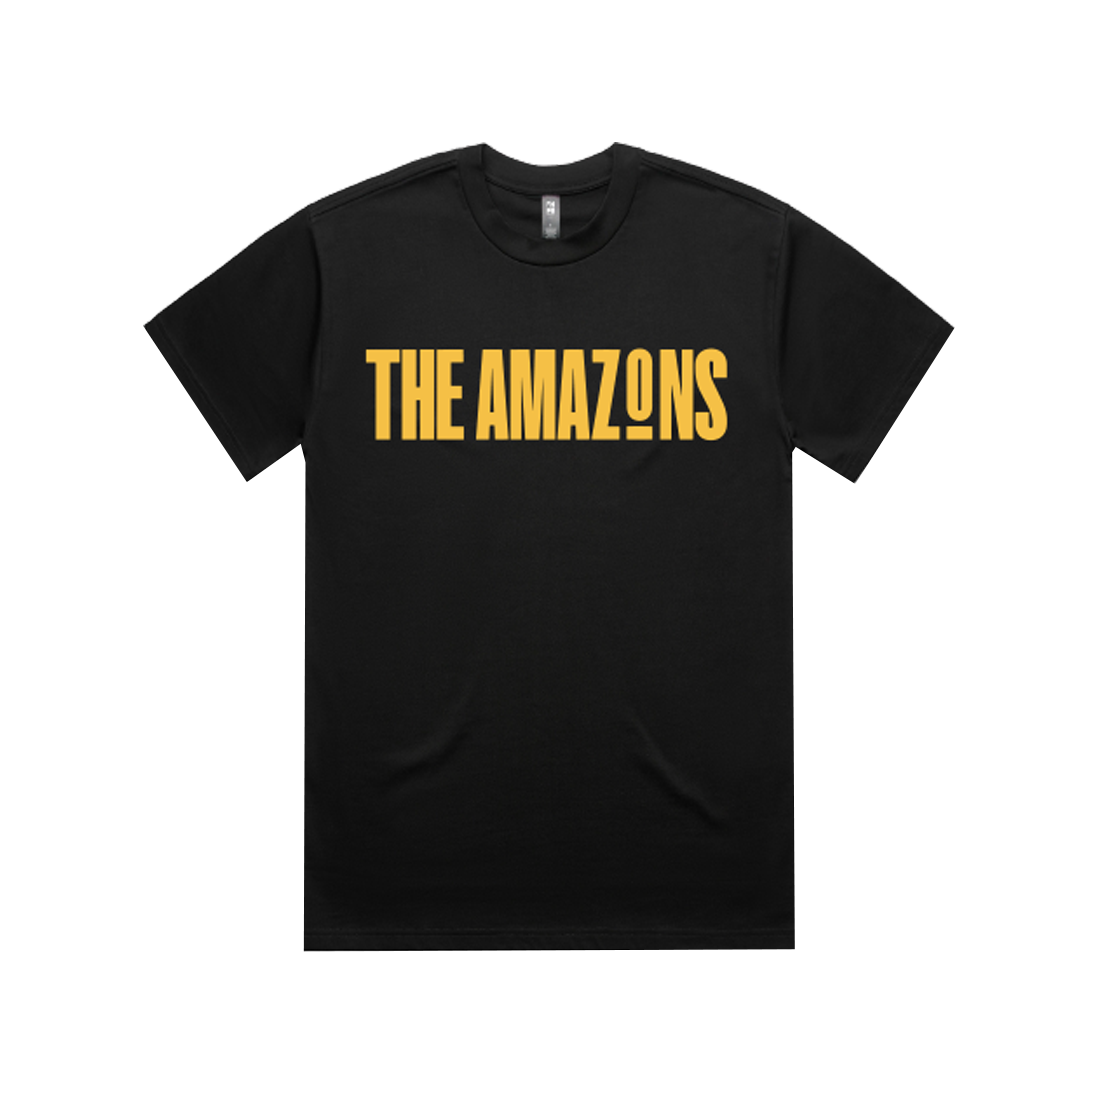 The Amazons - Black Tee Logo Tee The Amazons